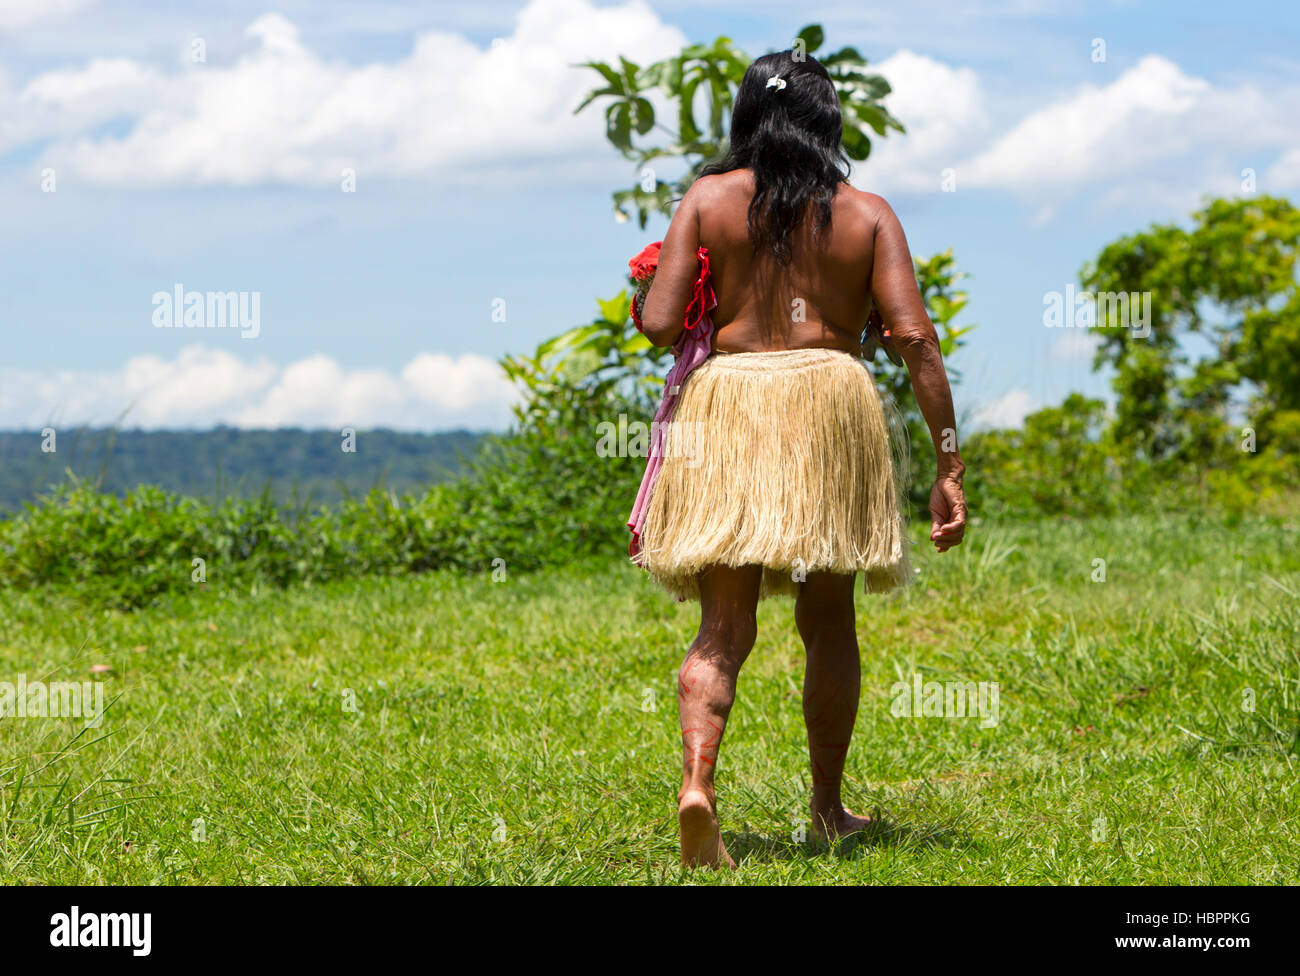 Brasilianische Indianerin vom Stamm im Amazonas, Brasilien Stockfoto